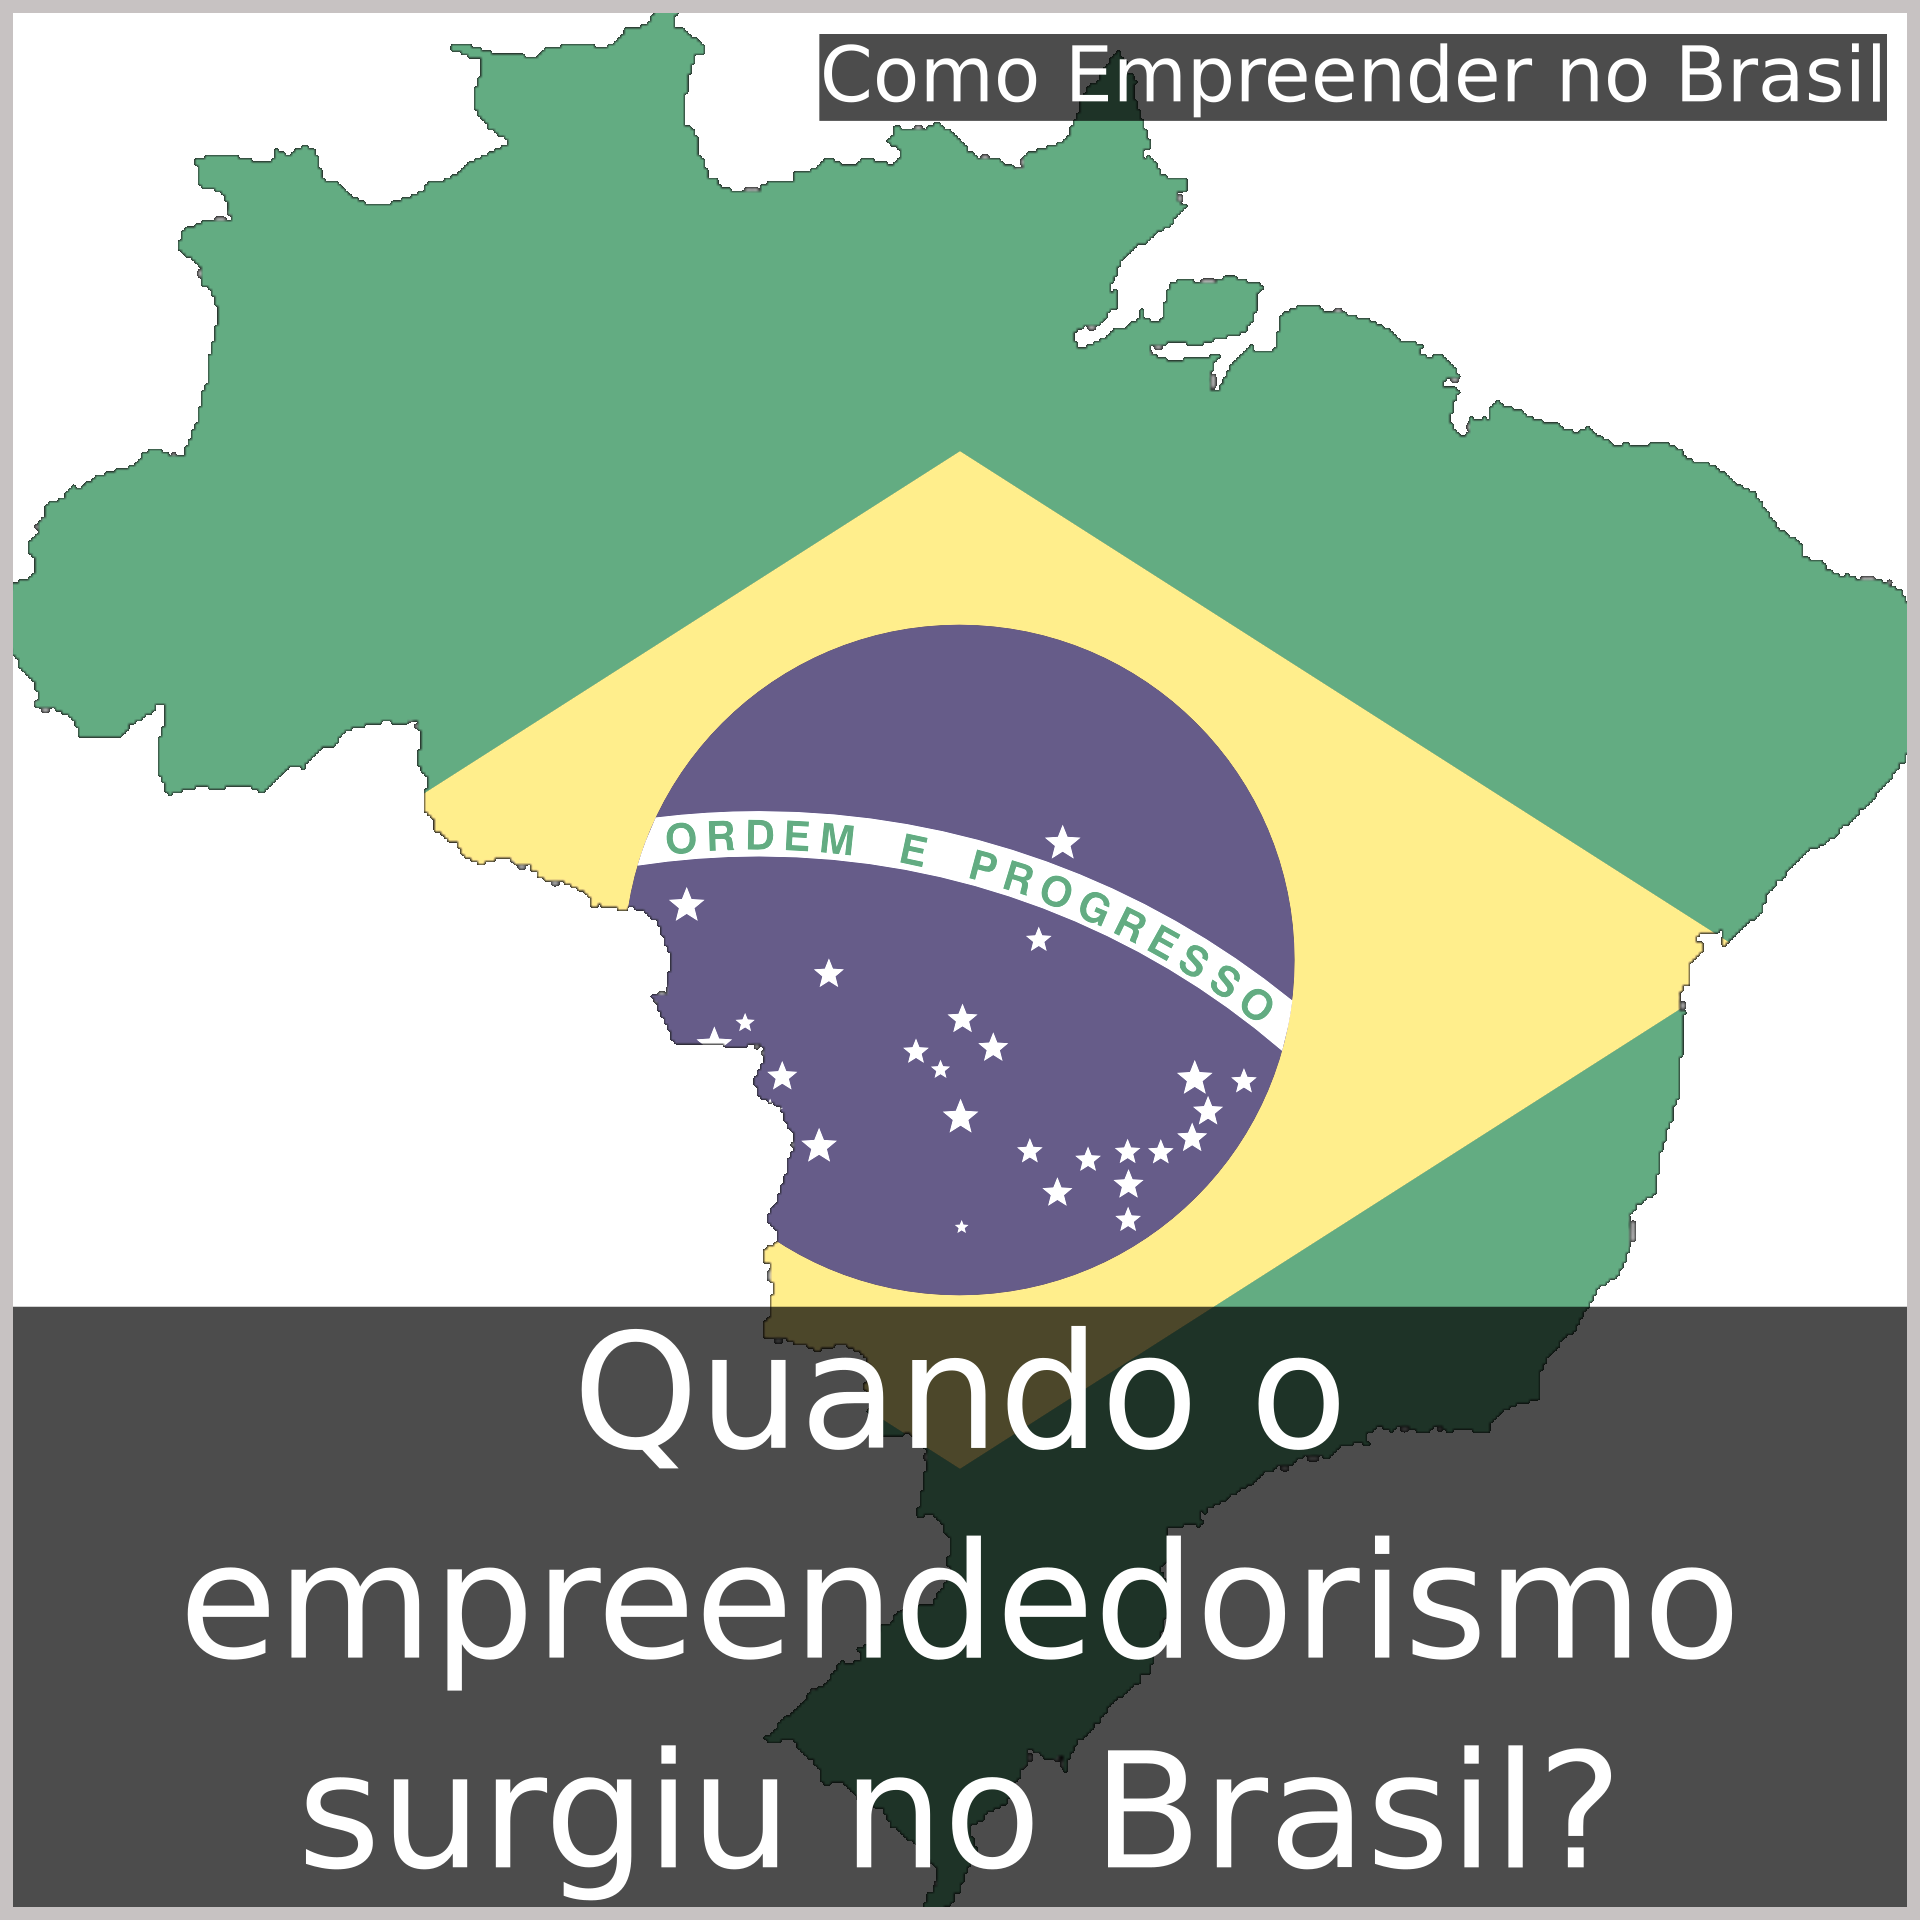 Quando o empreendedorismo surgiu no Brasil?